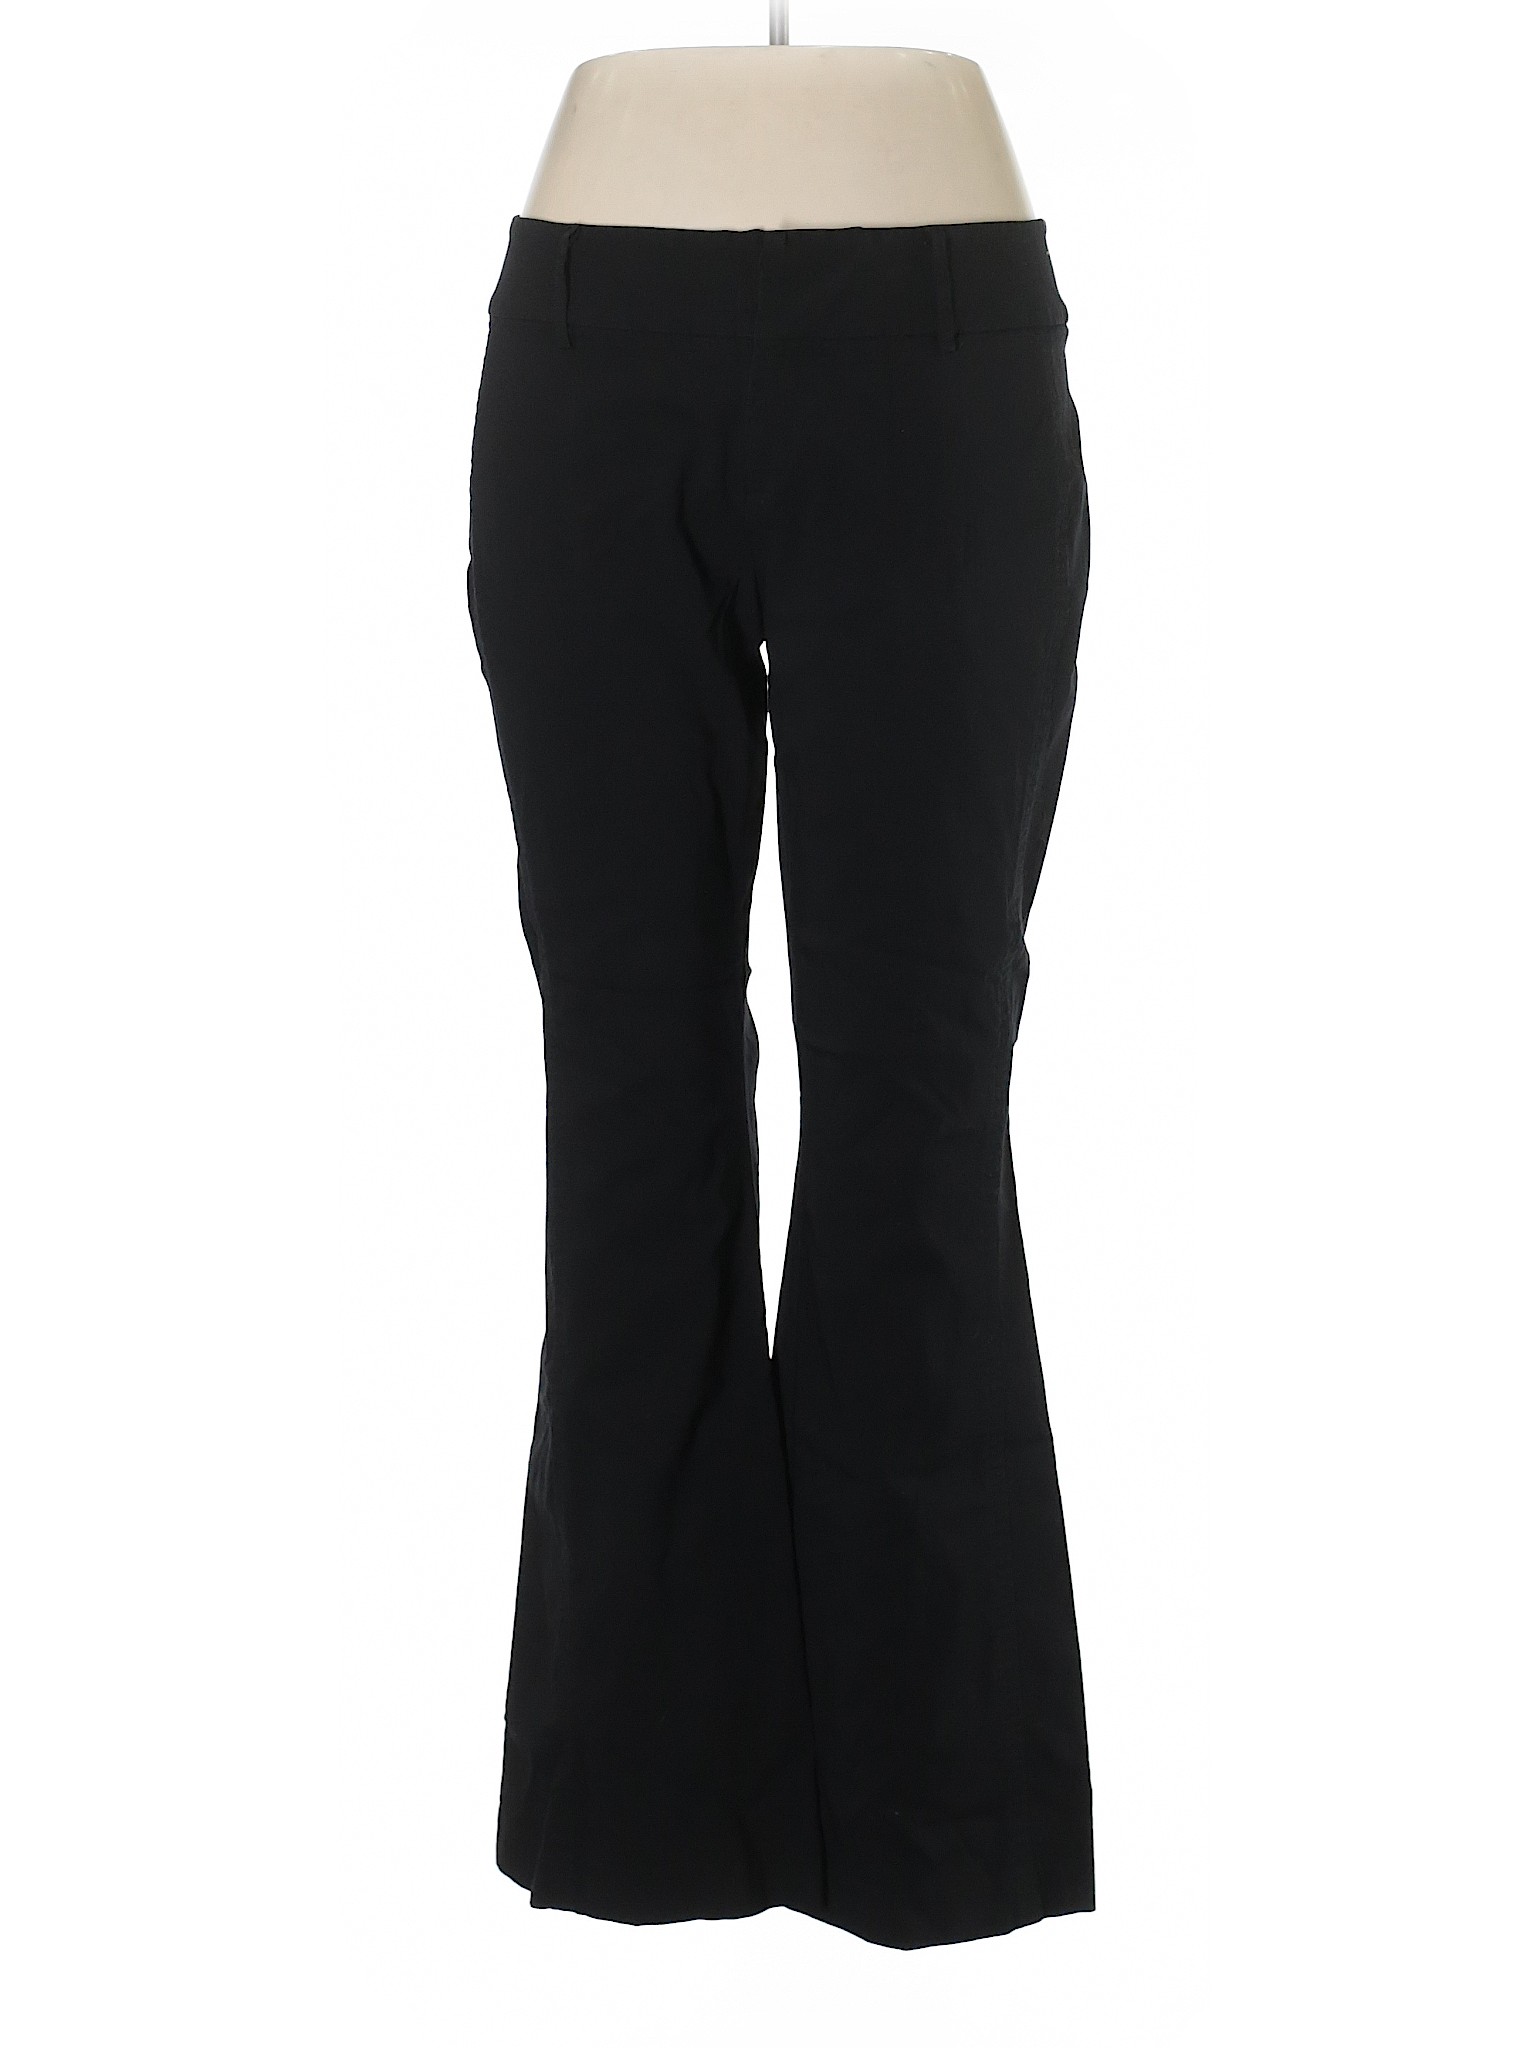 Mixit Women Black Dress Pants 14 | eBay